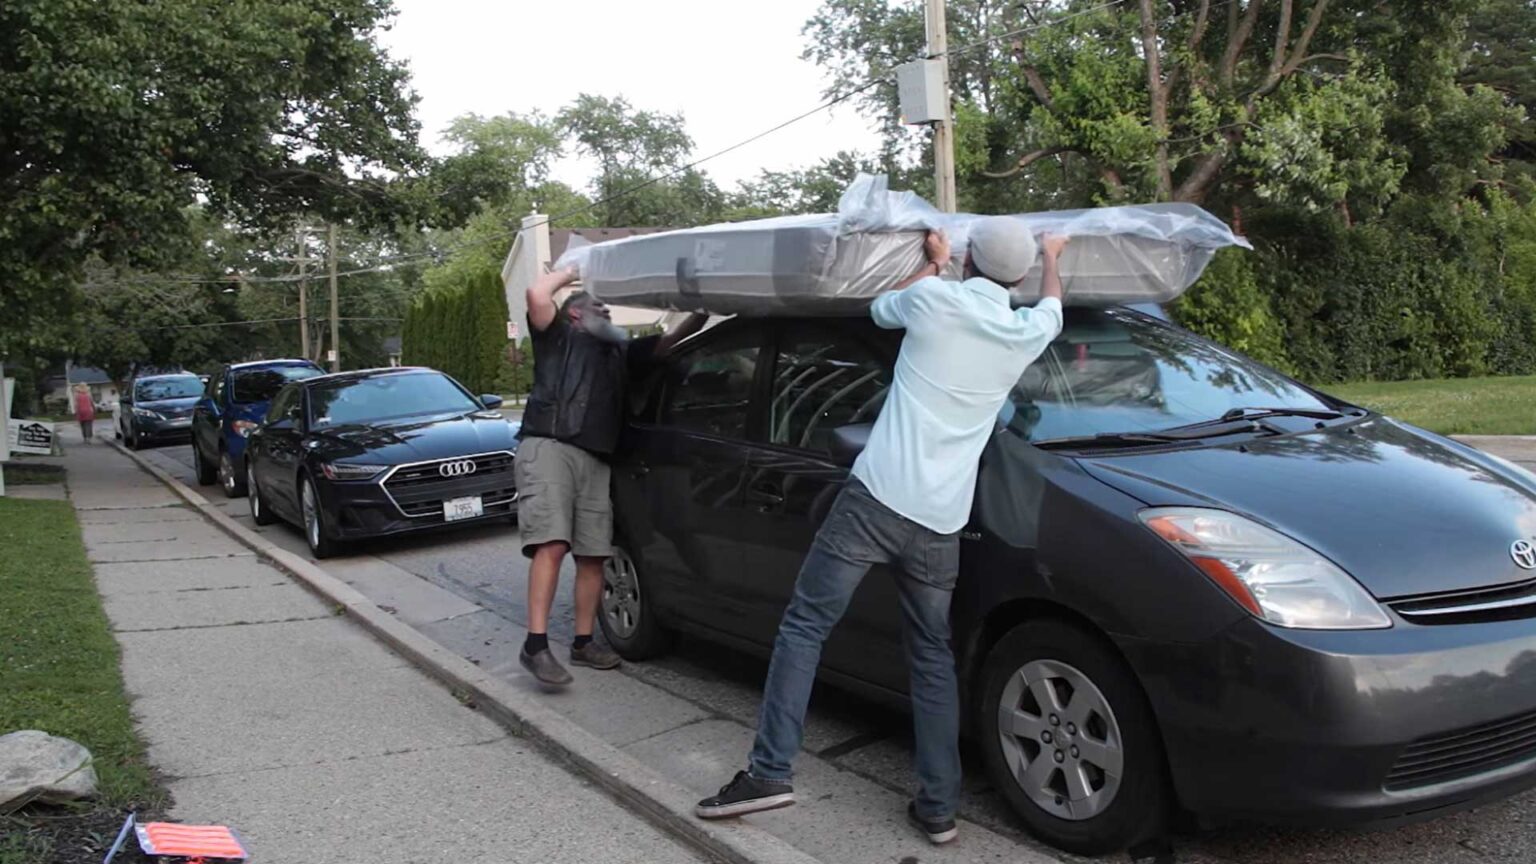 move full size mattress on sedan